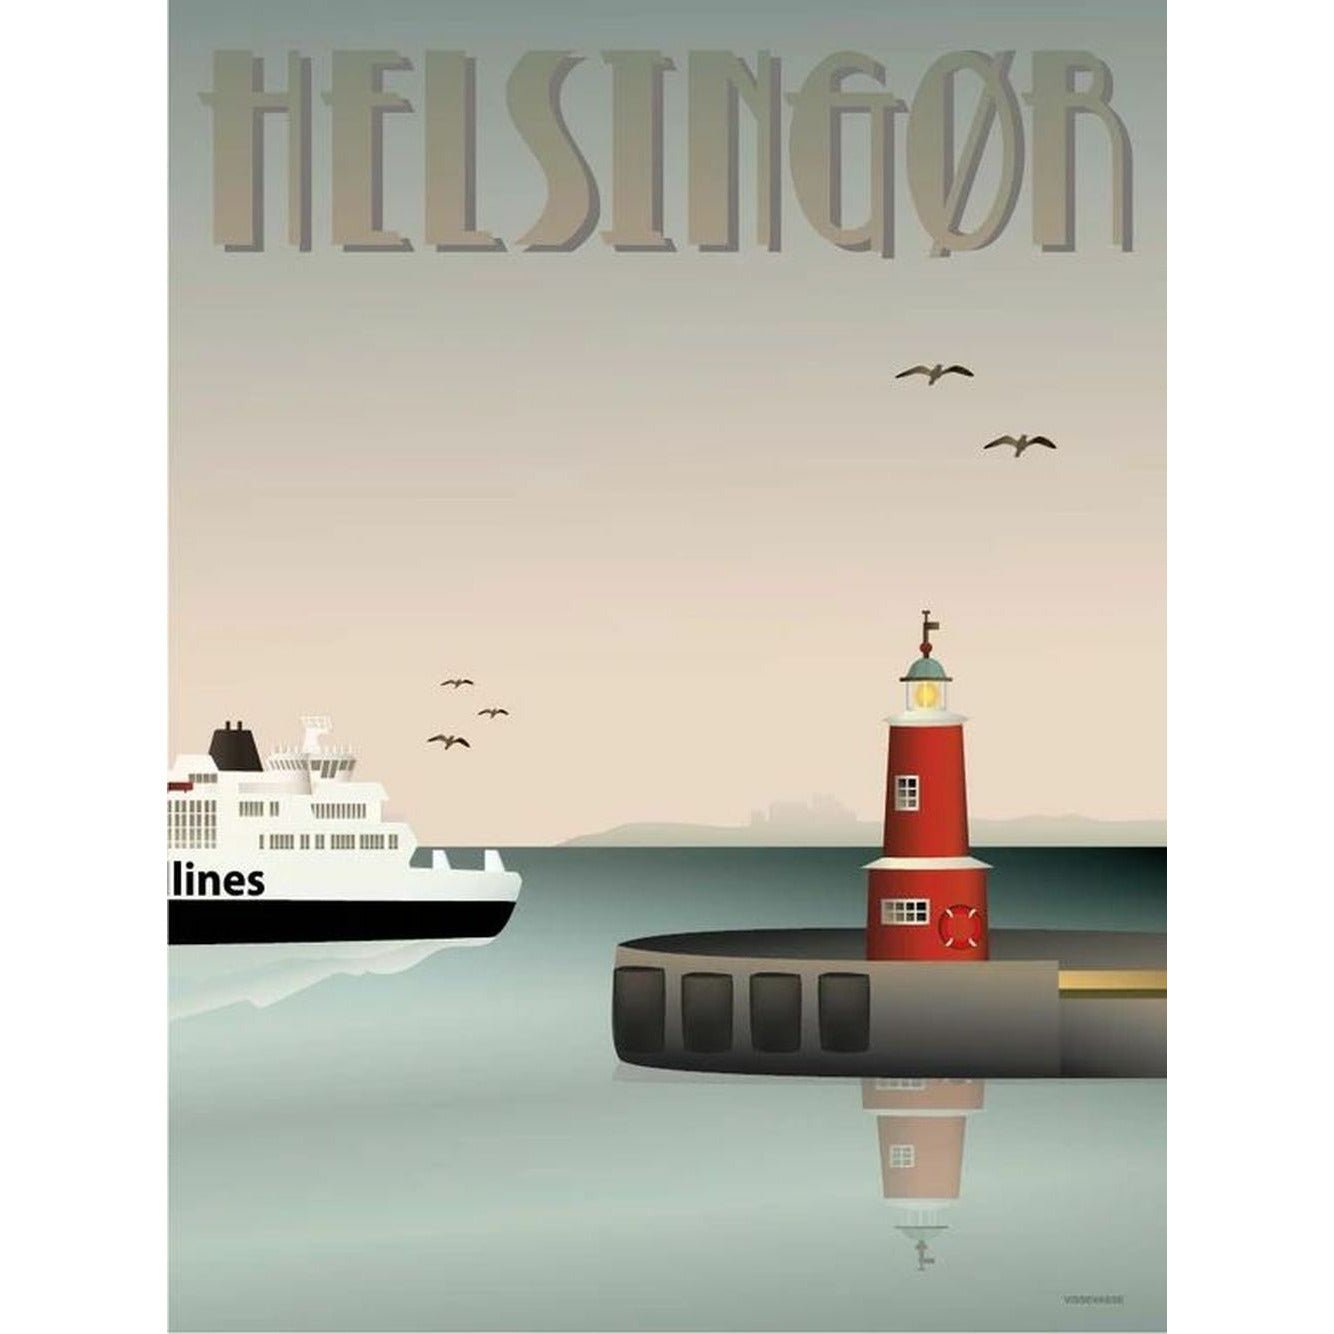 Vissevasse Helsingør Harbour -affisch, 30x40 cm